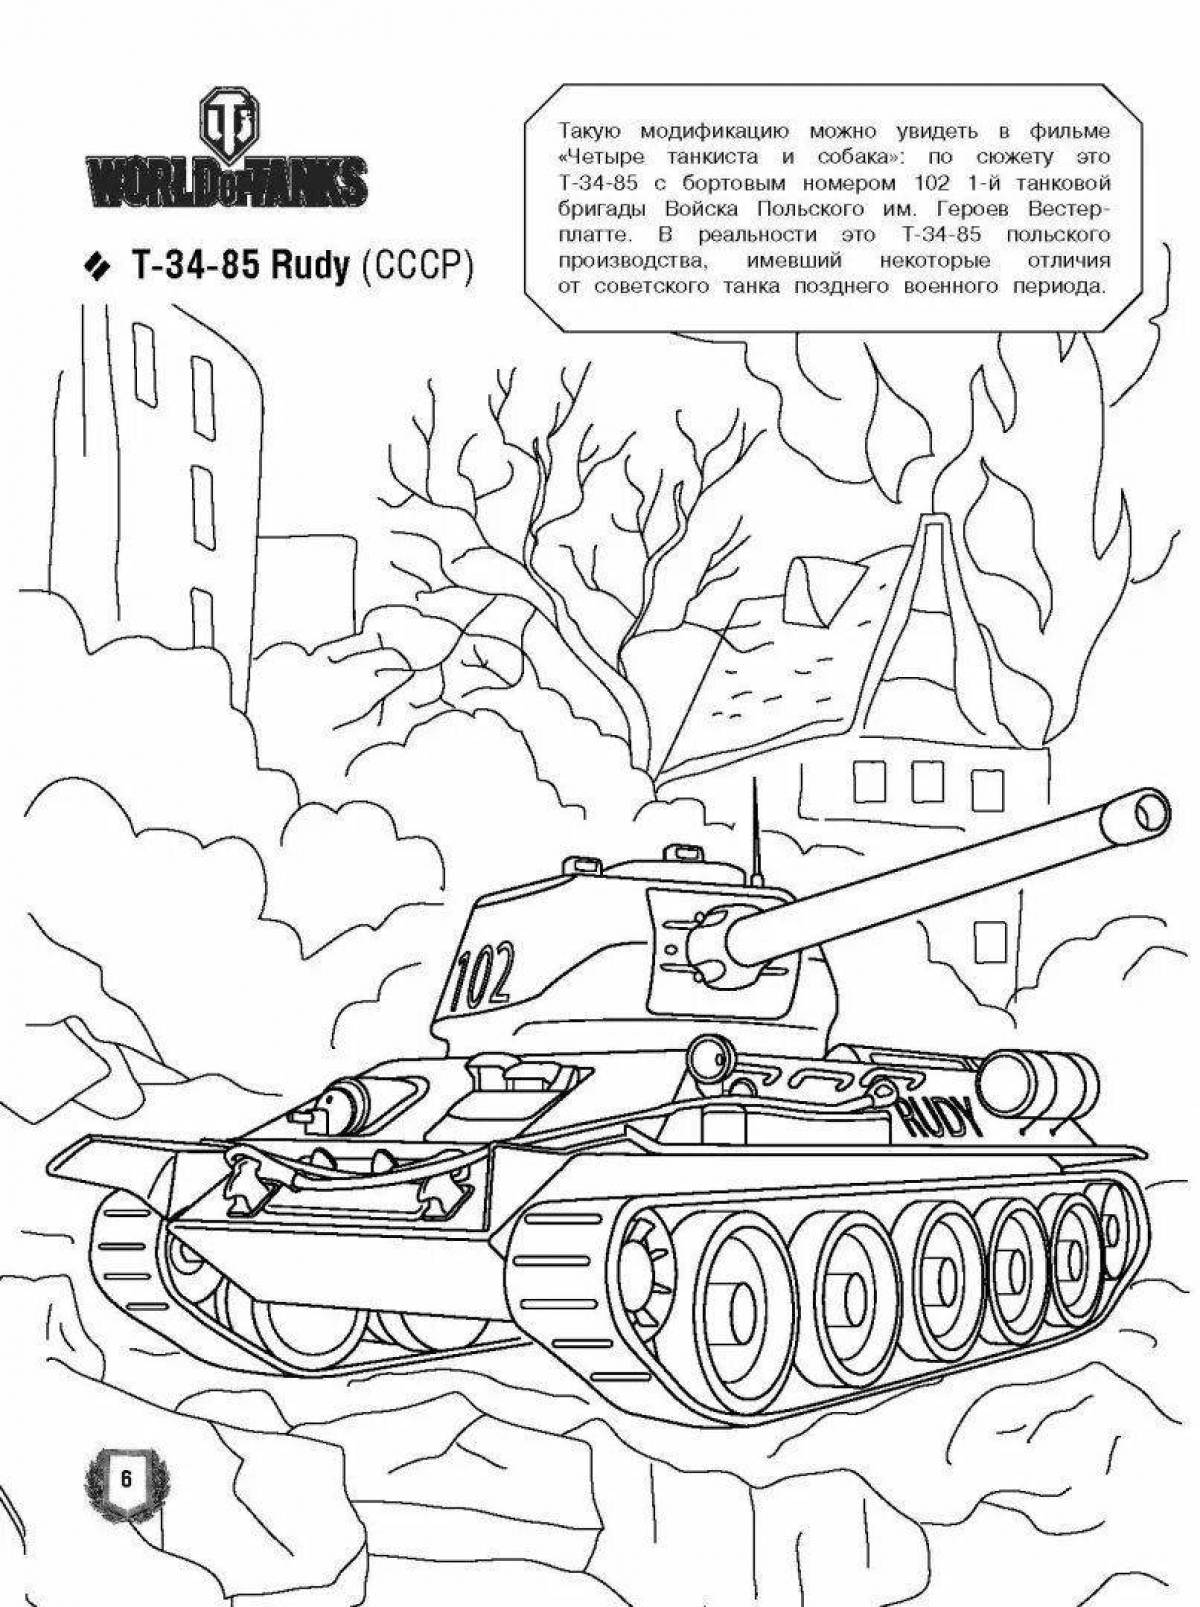 Fun tank coloring page